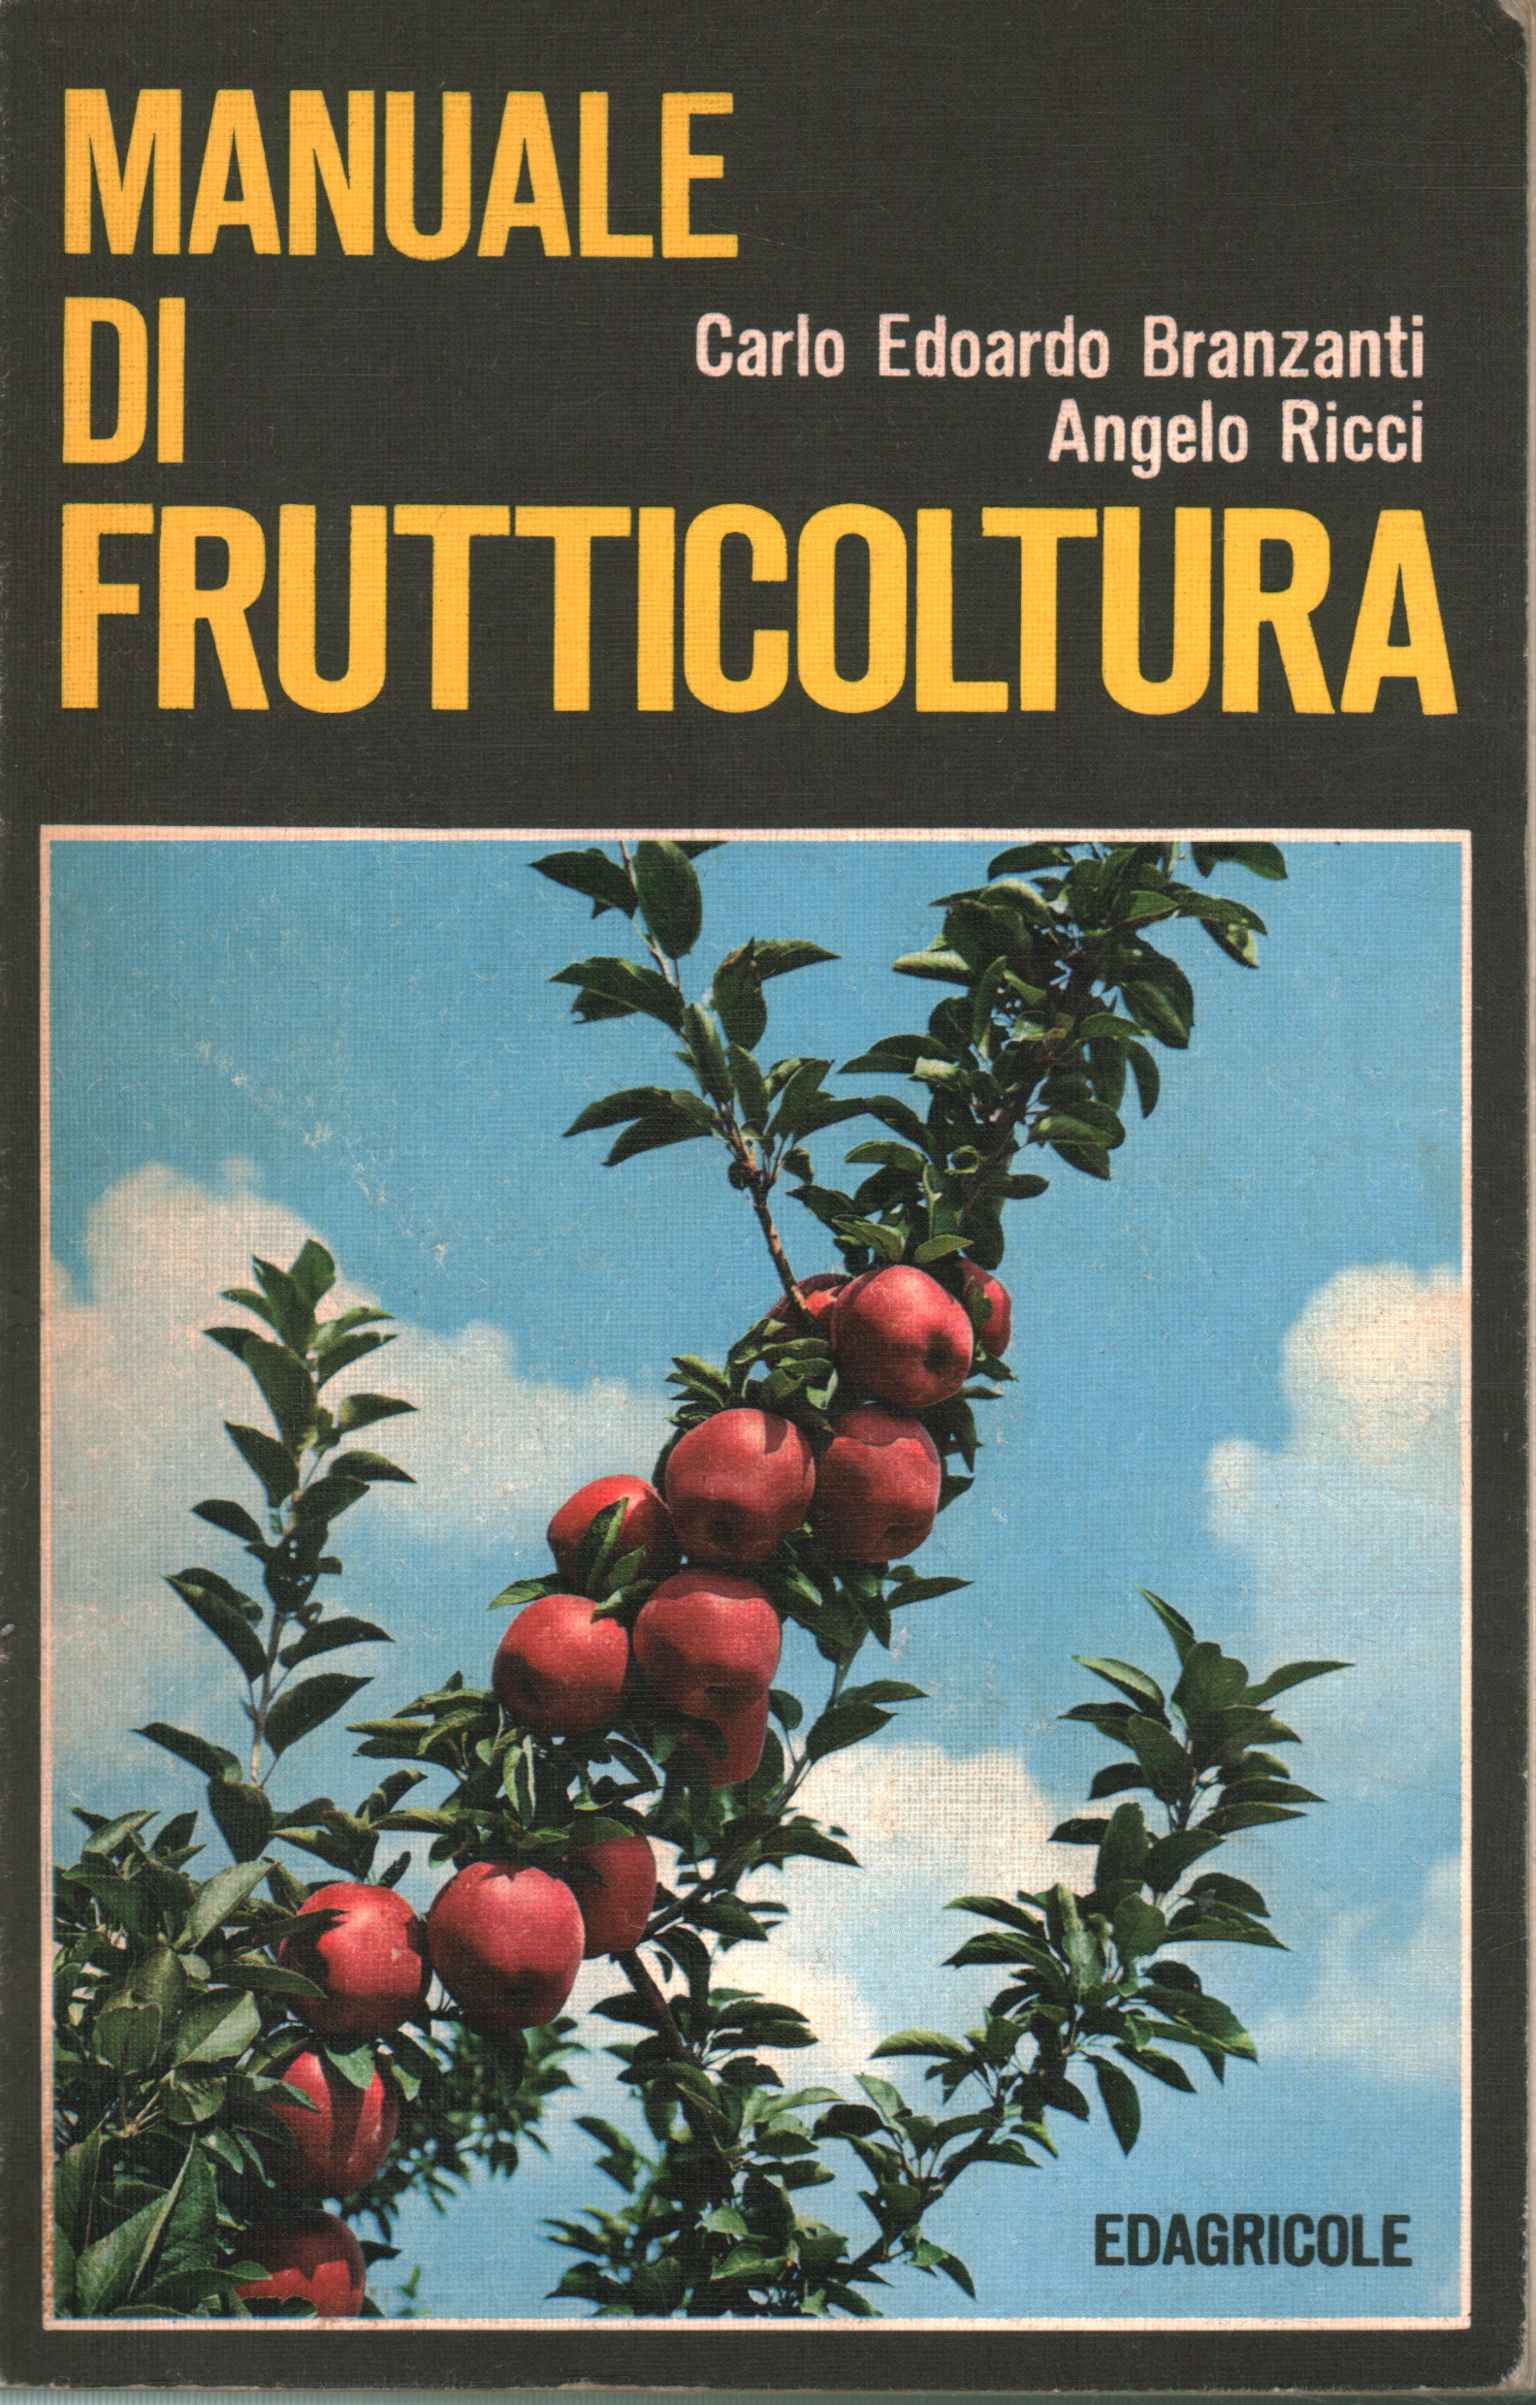 manual de fruticultura